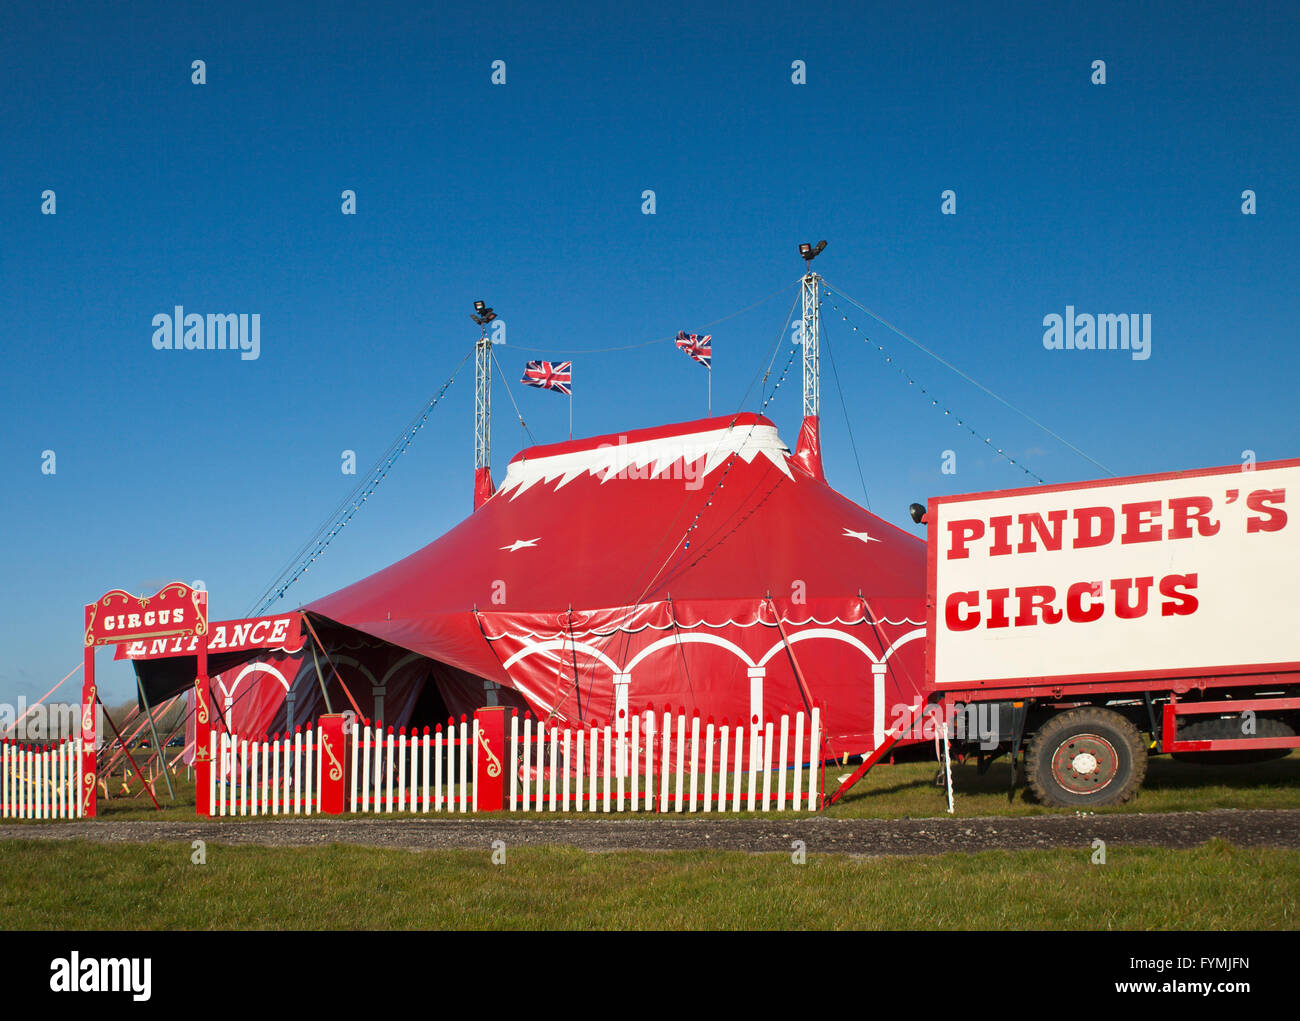 Pinders circus tent. Stock Photo